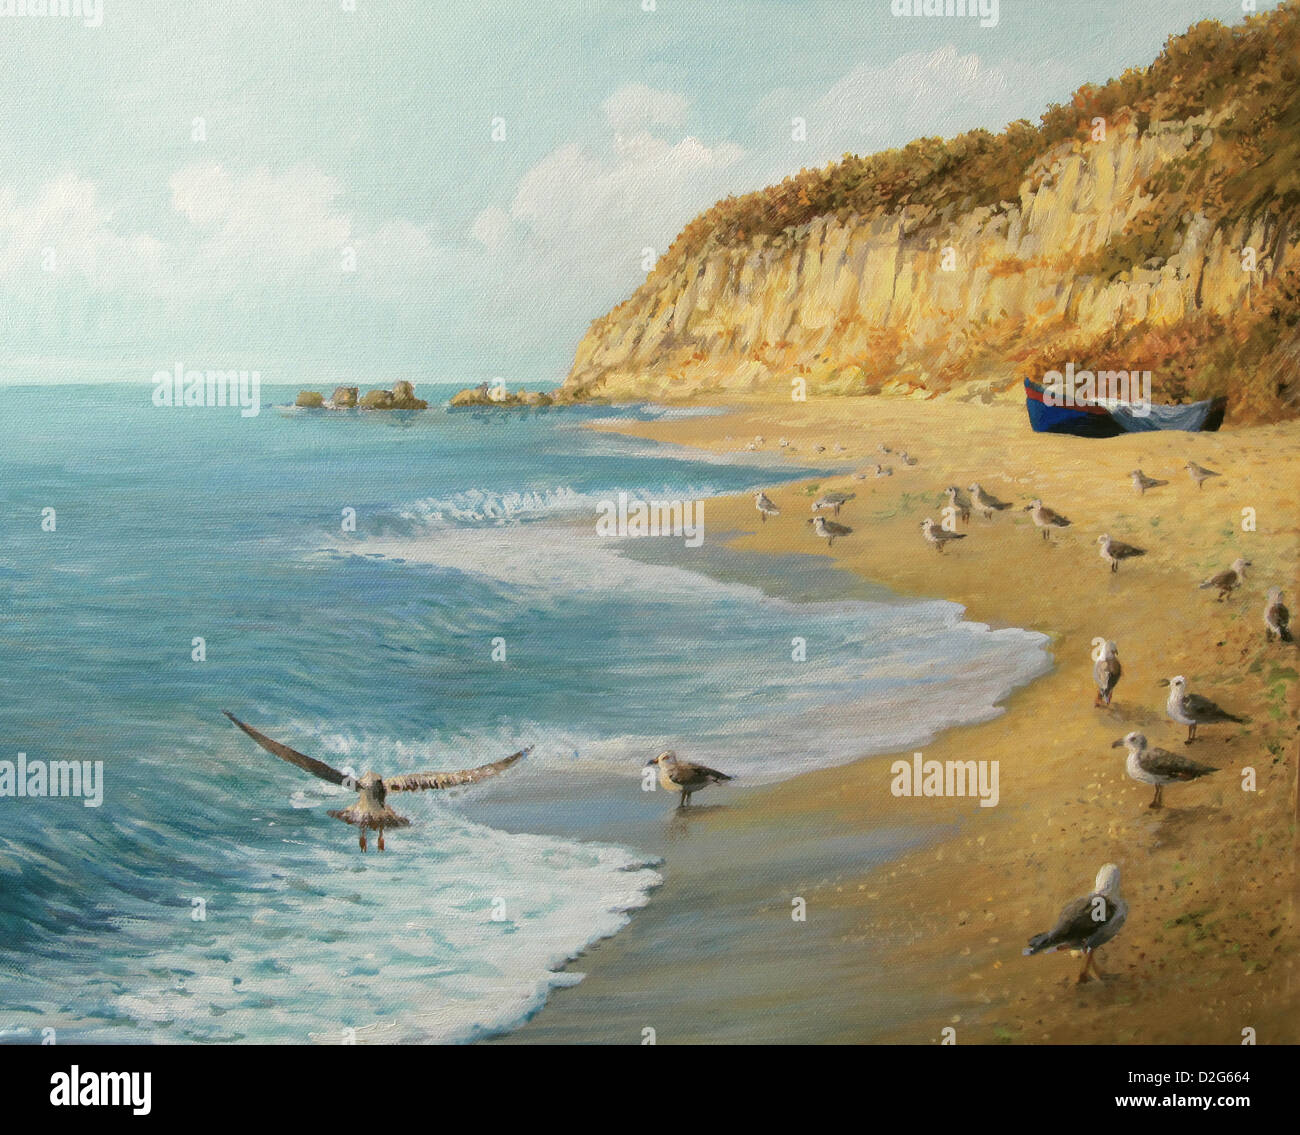 Une peinture à l'huile sur toile d'un été à la plage. Plage isolée comme un royaume de tranquillité, avec un bateau de pêche. Banque D'Images